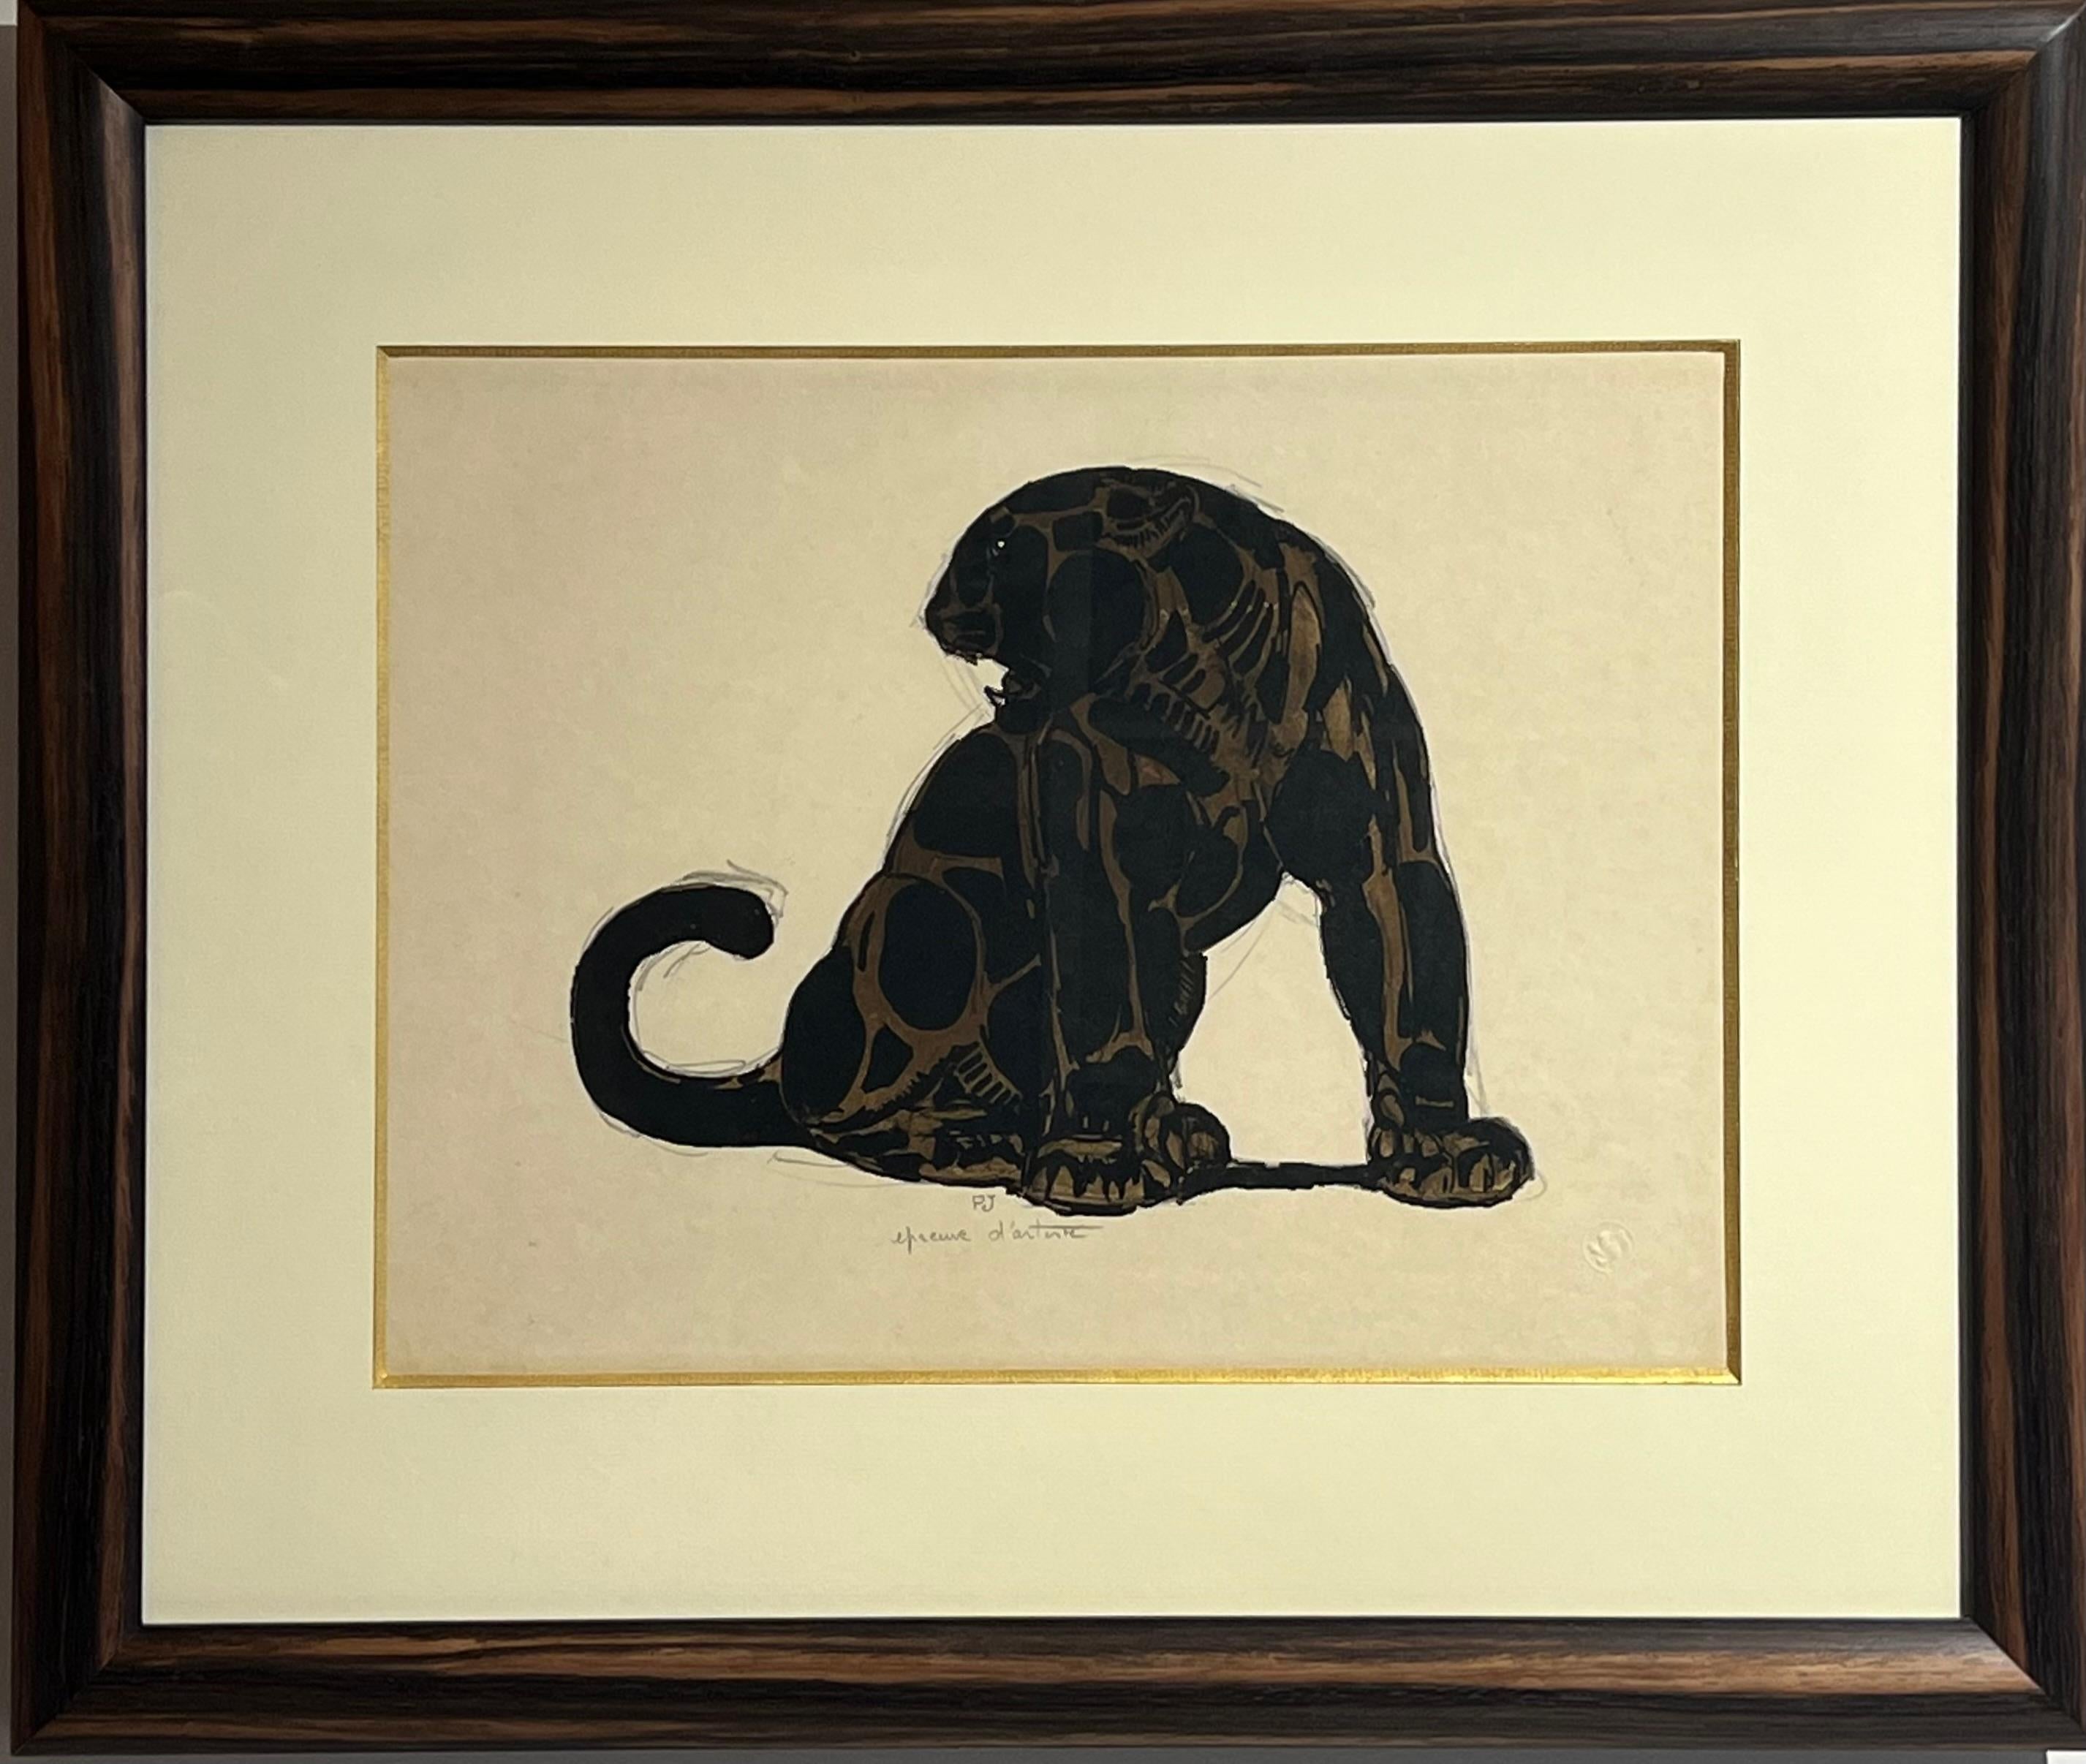 Art Deco original lithograph of a seated jaguar by Paul Jouve - Print by Pierre-Paul Jouve